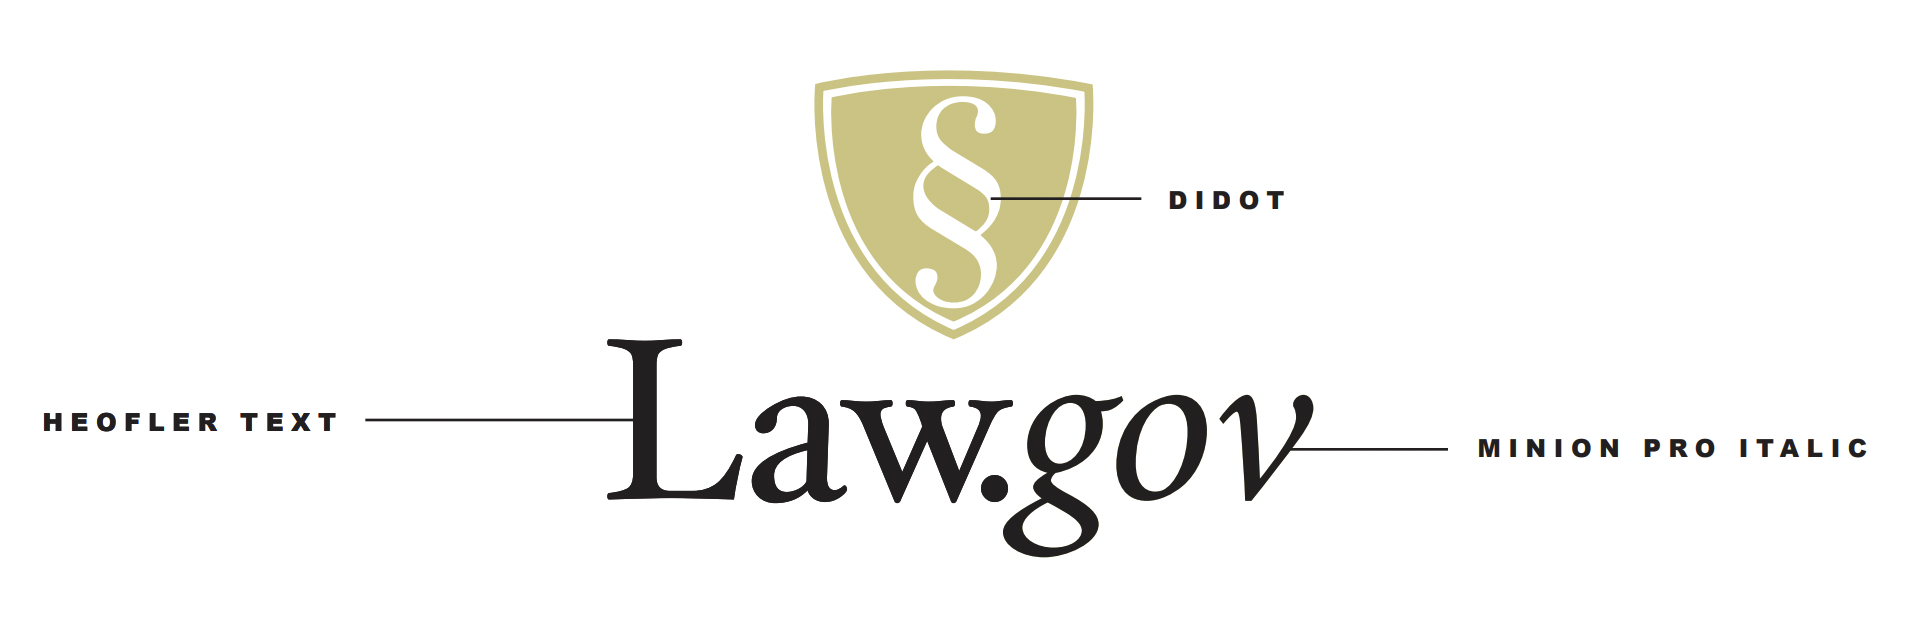 Law.Gov Logo